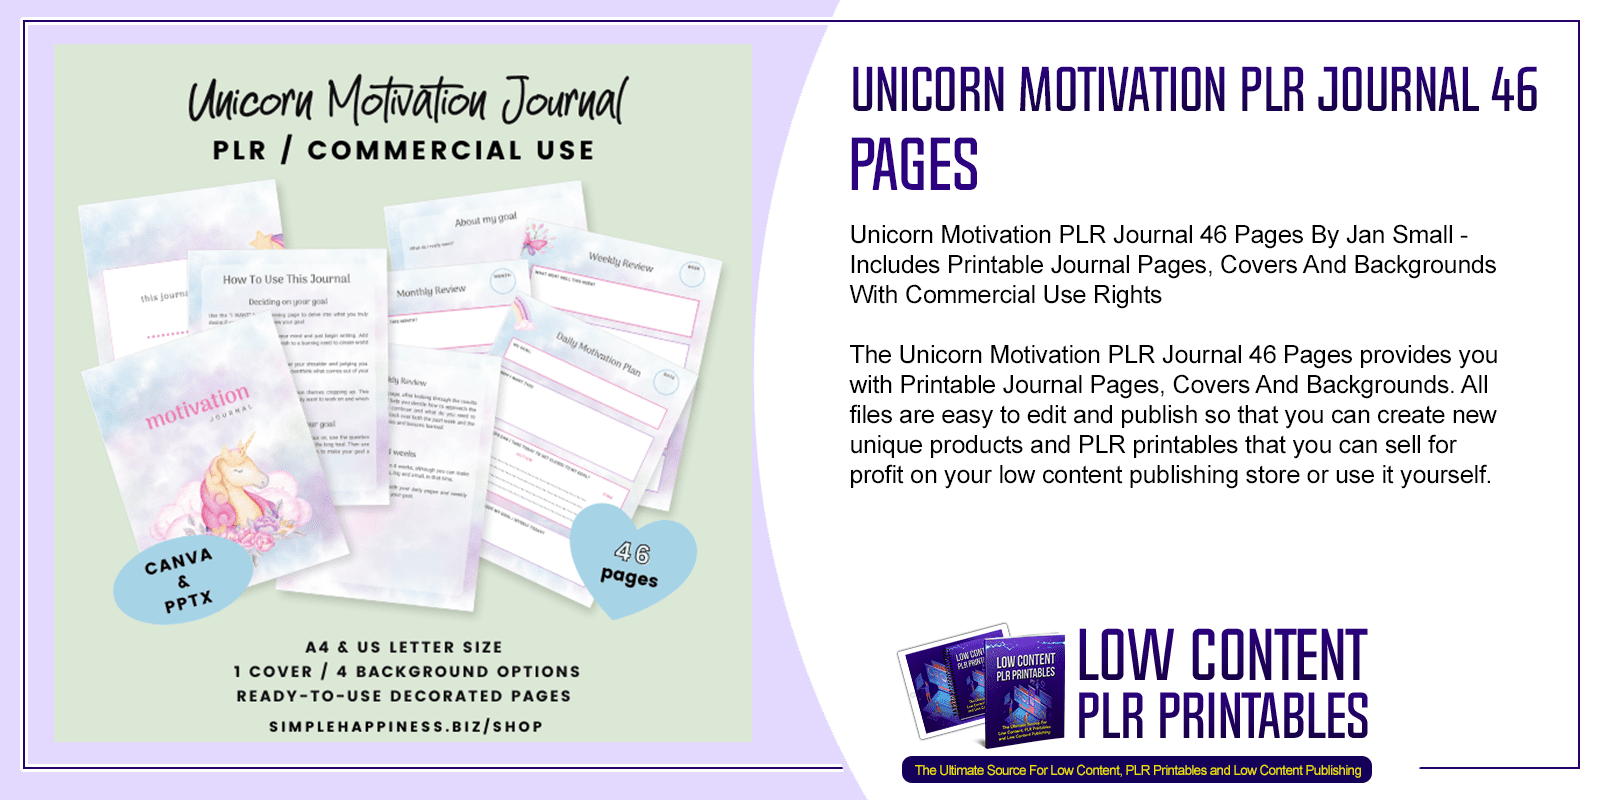 Unicorn Motivation PLR Journal 46 Pages